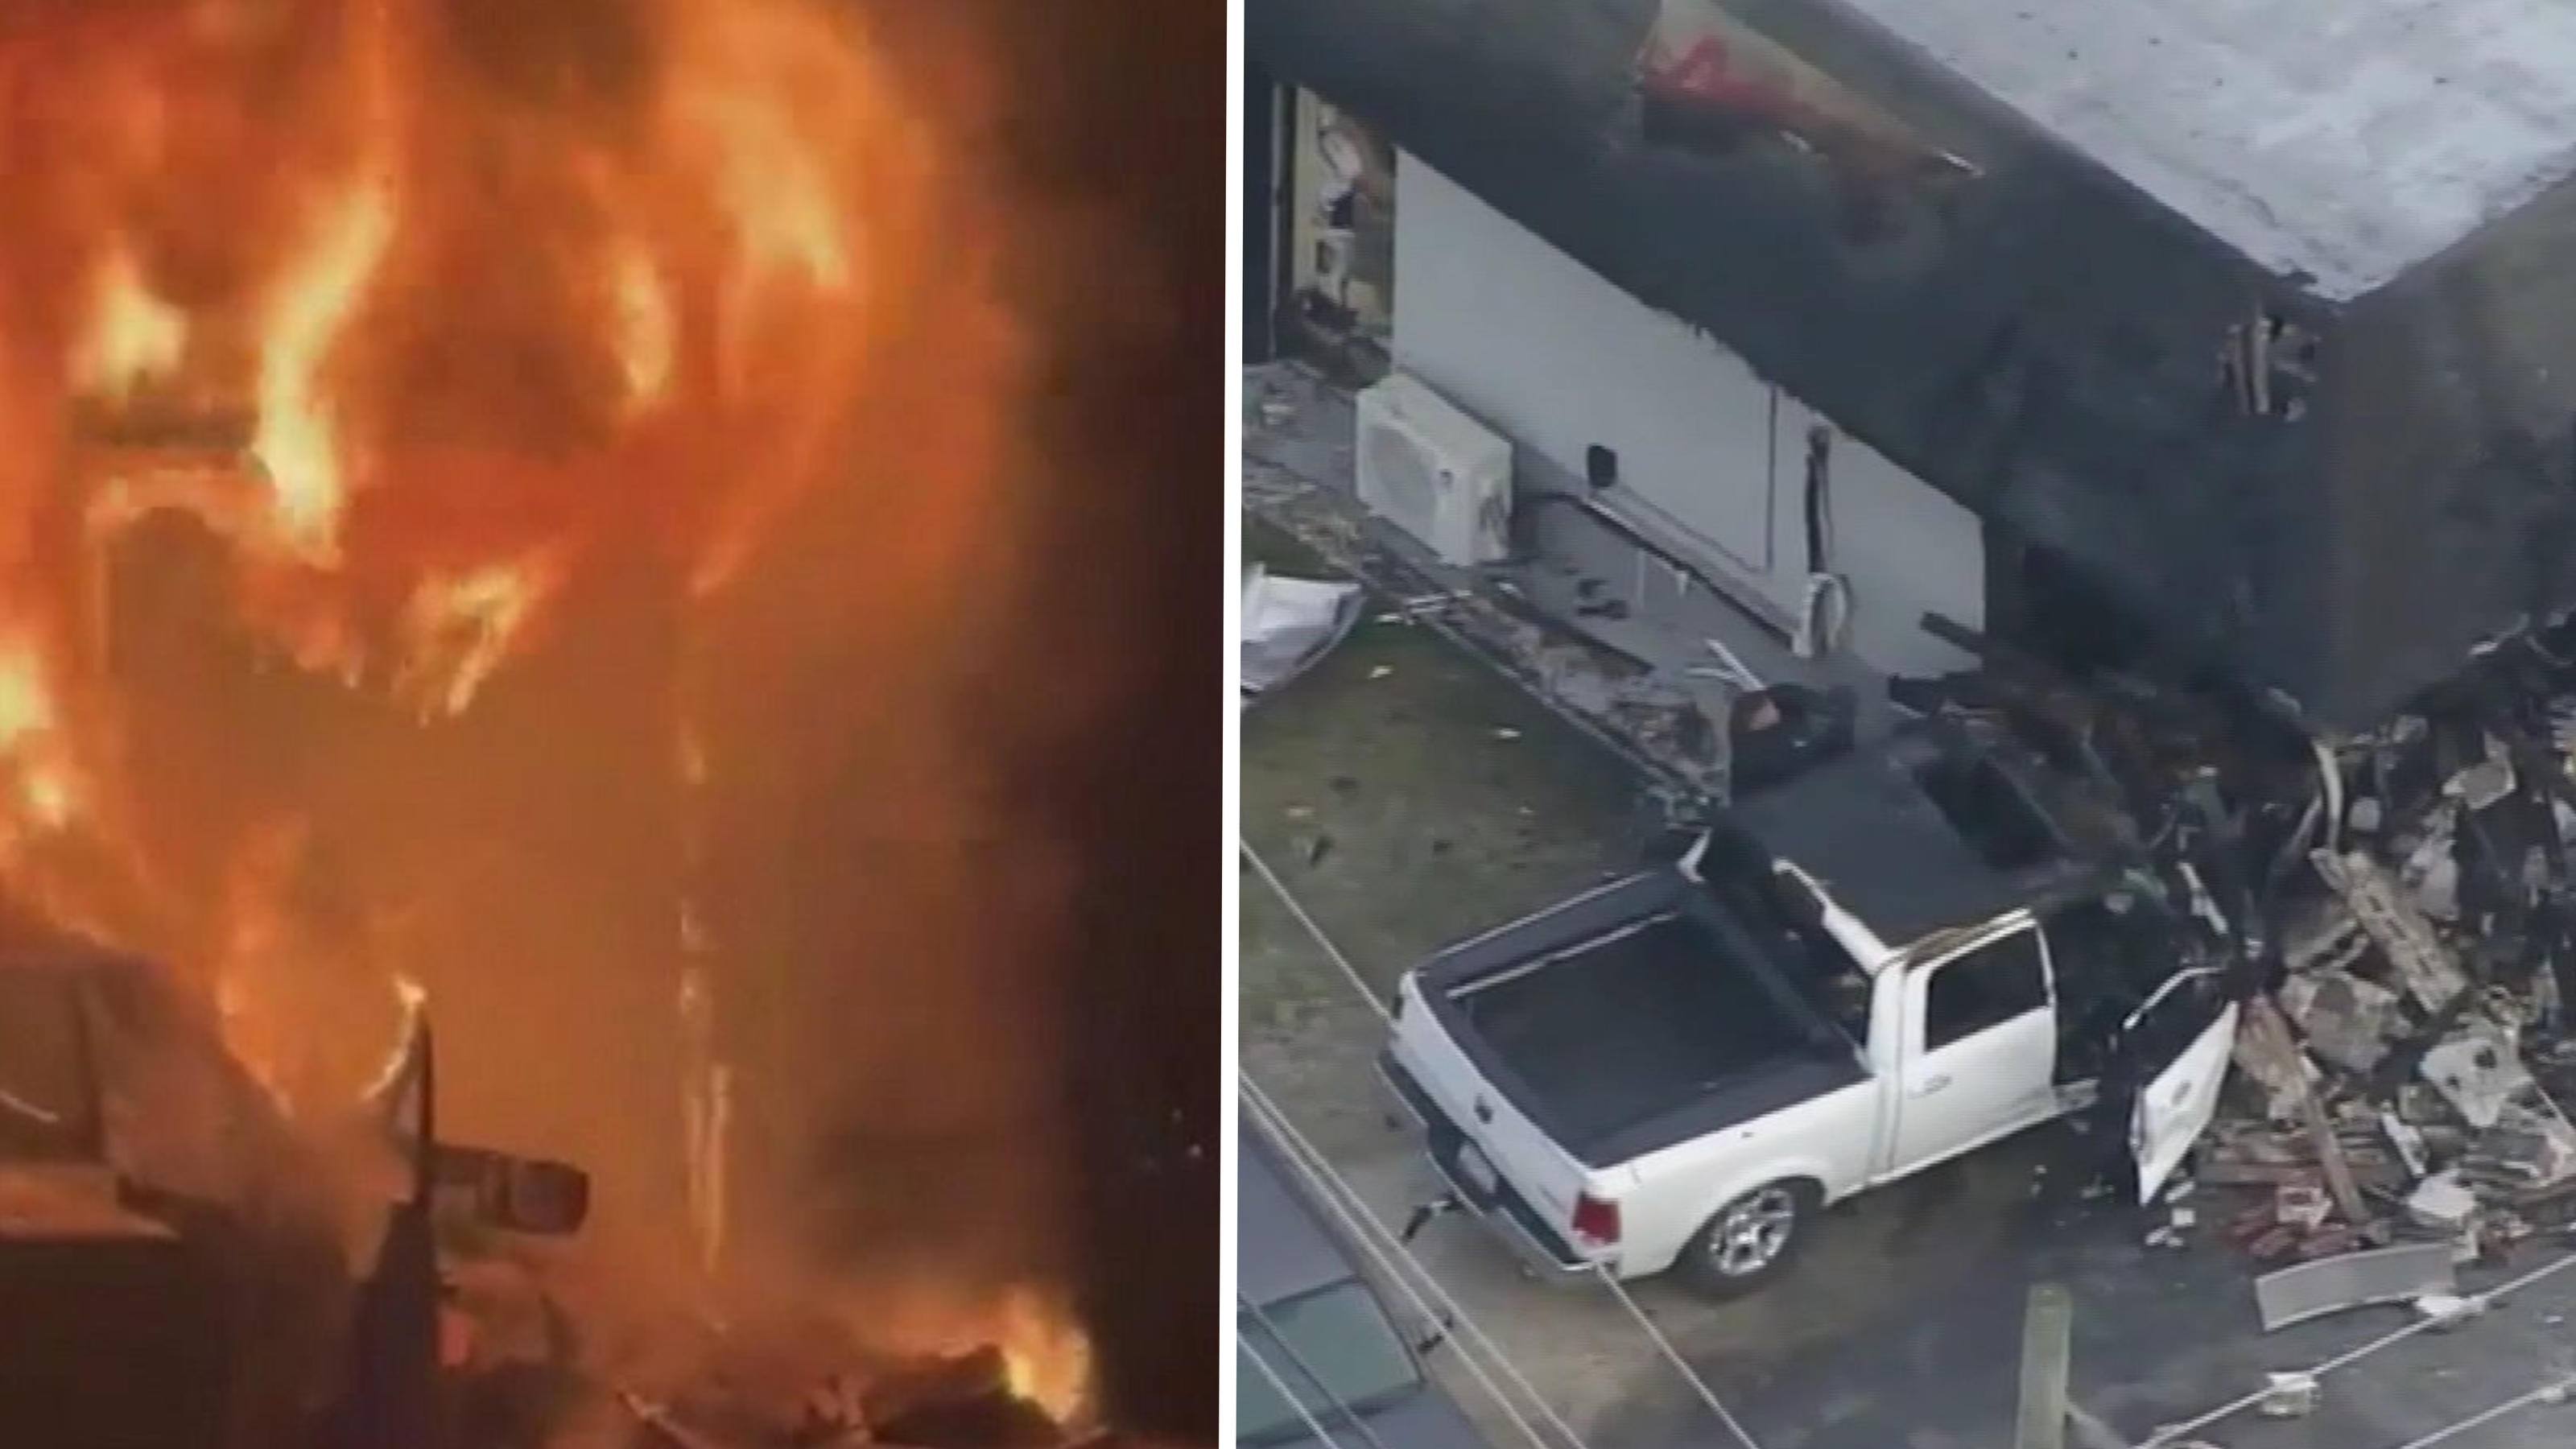 Mutige Helden befreien Mann aus brennendem Truck Rettung aus der Flammenhölle!